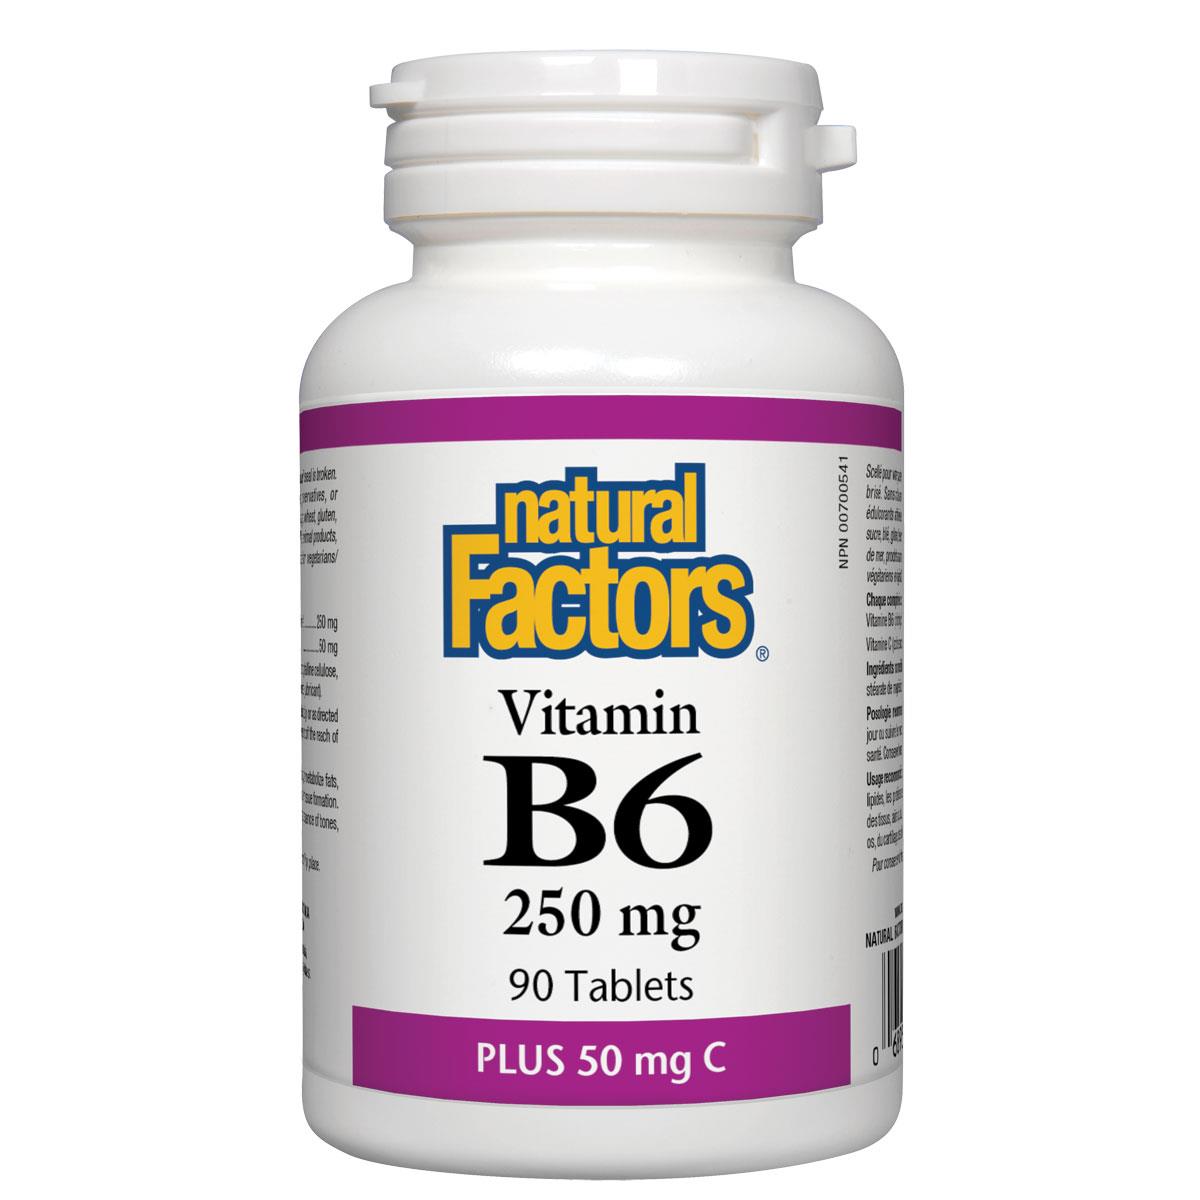 Natural Factors Vitamin B6 plus Vitamin C, 90 Tablets